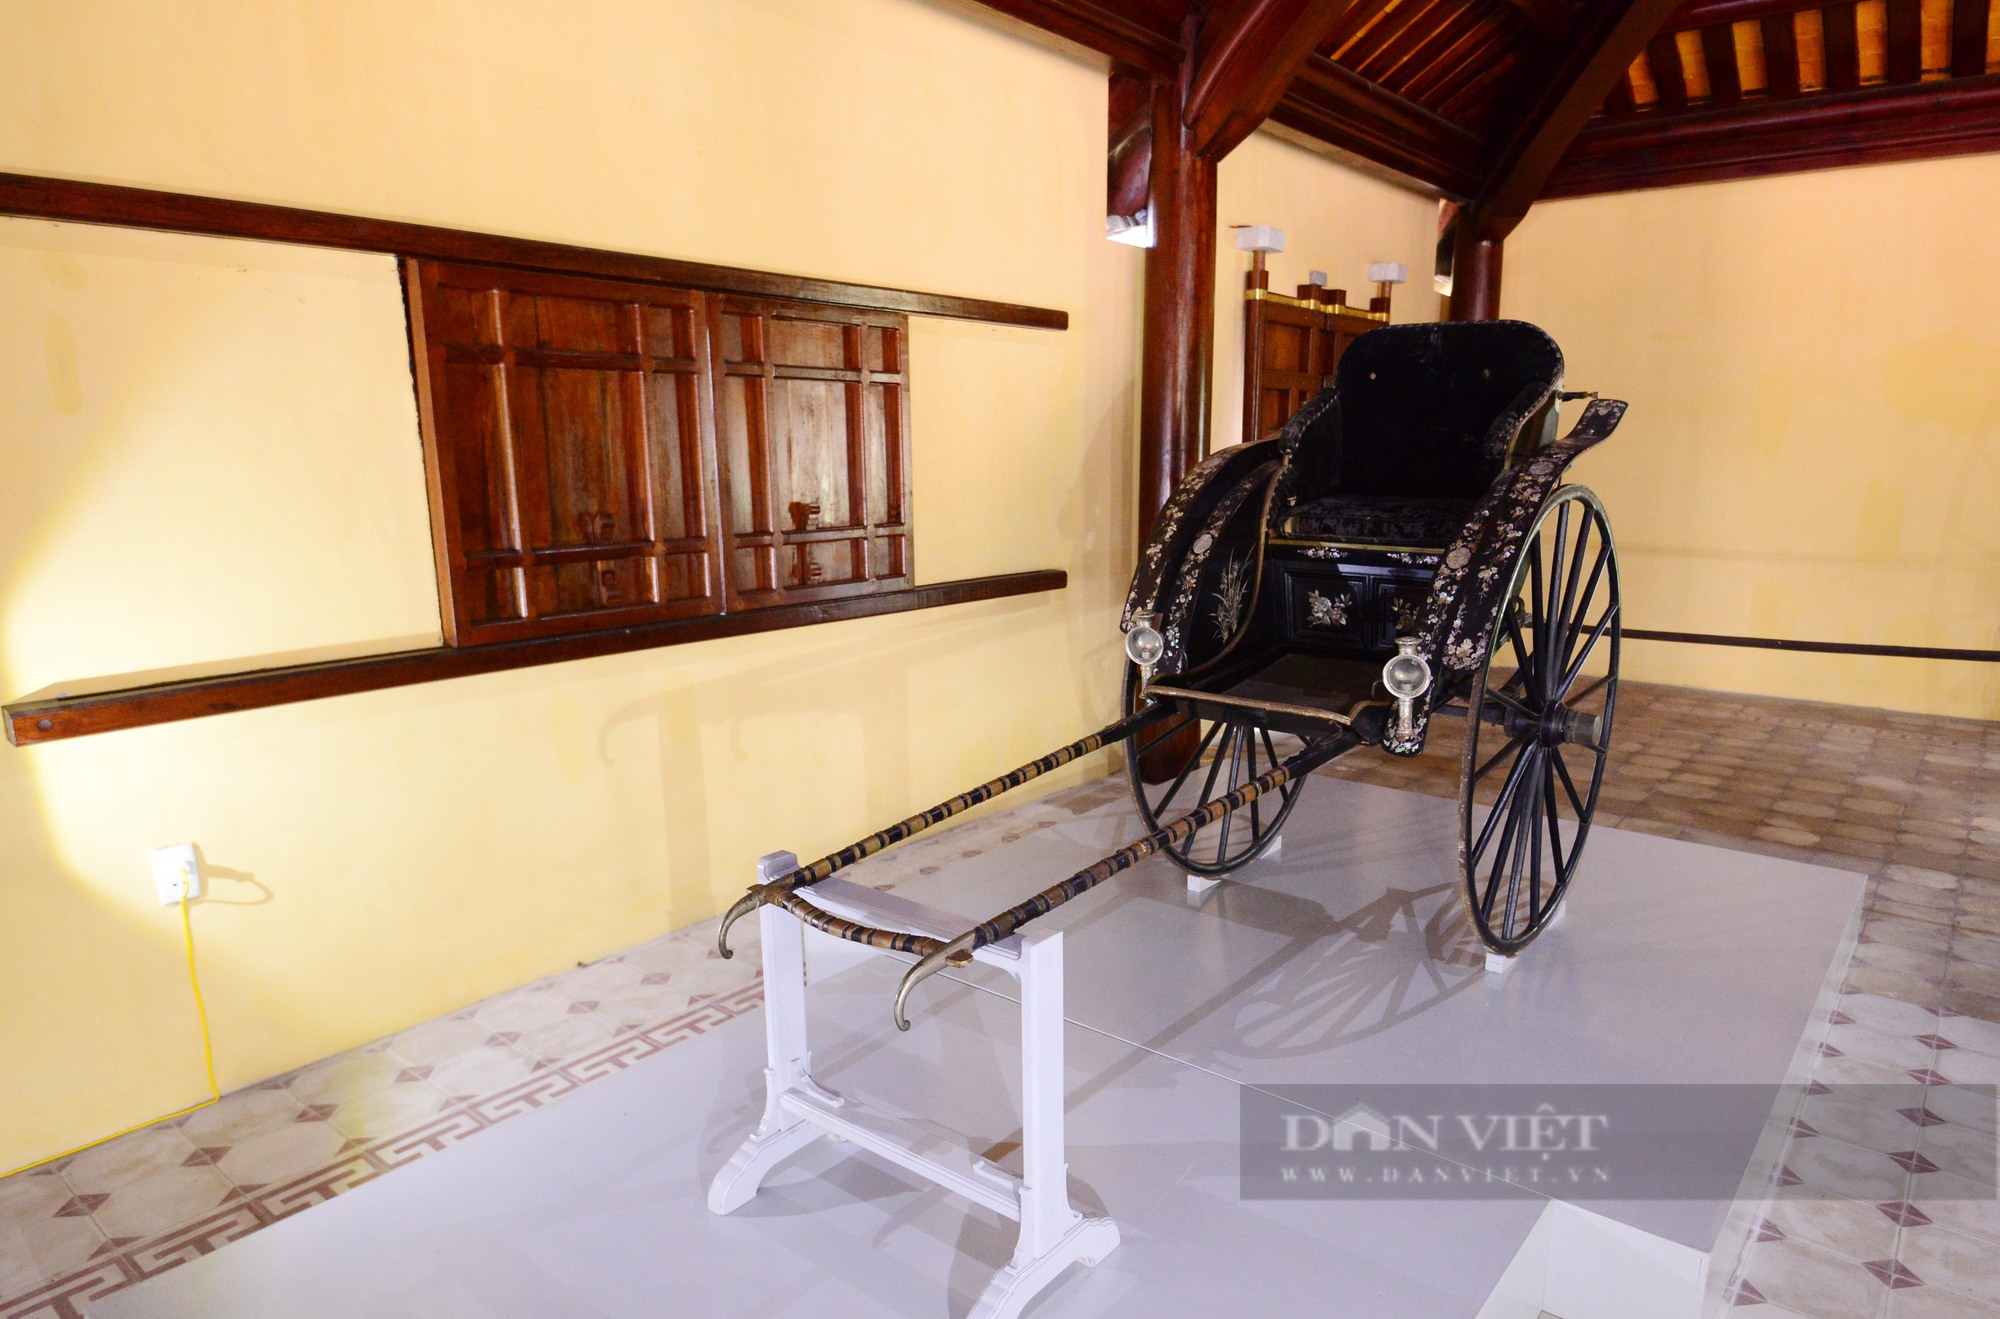 Chiếc xe kéo của Hoàng Thái hậu Từ Minh sau hơn 1 thế kỷ lưu lạc ở Pháp - Ảnh 2.